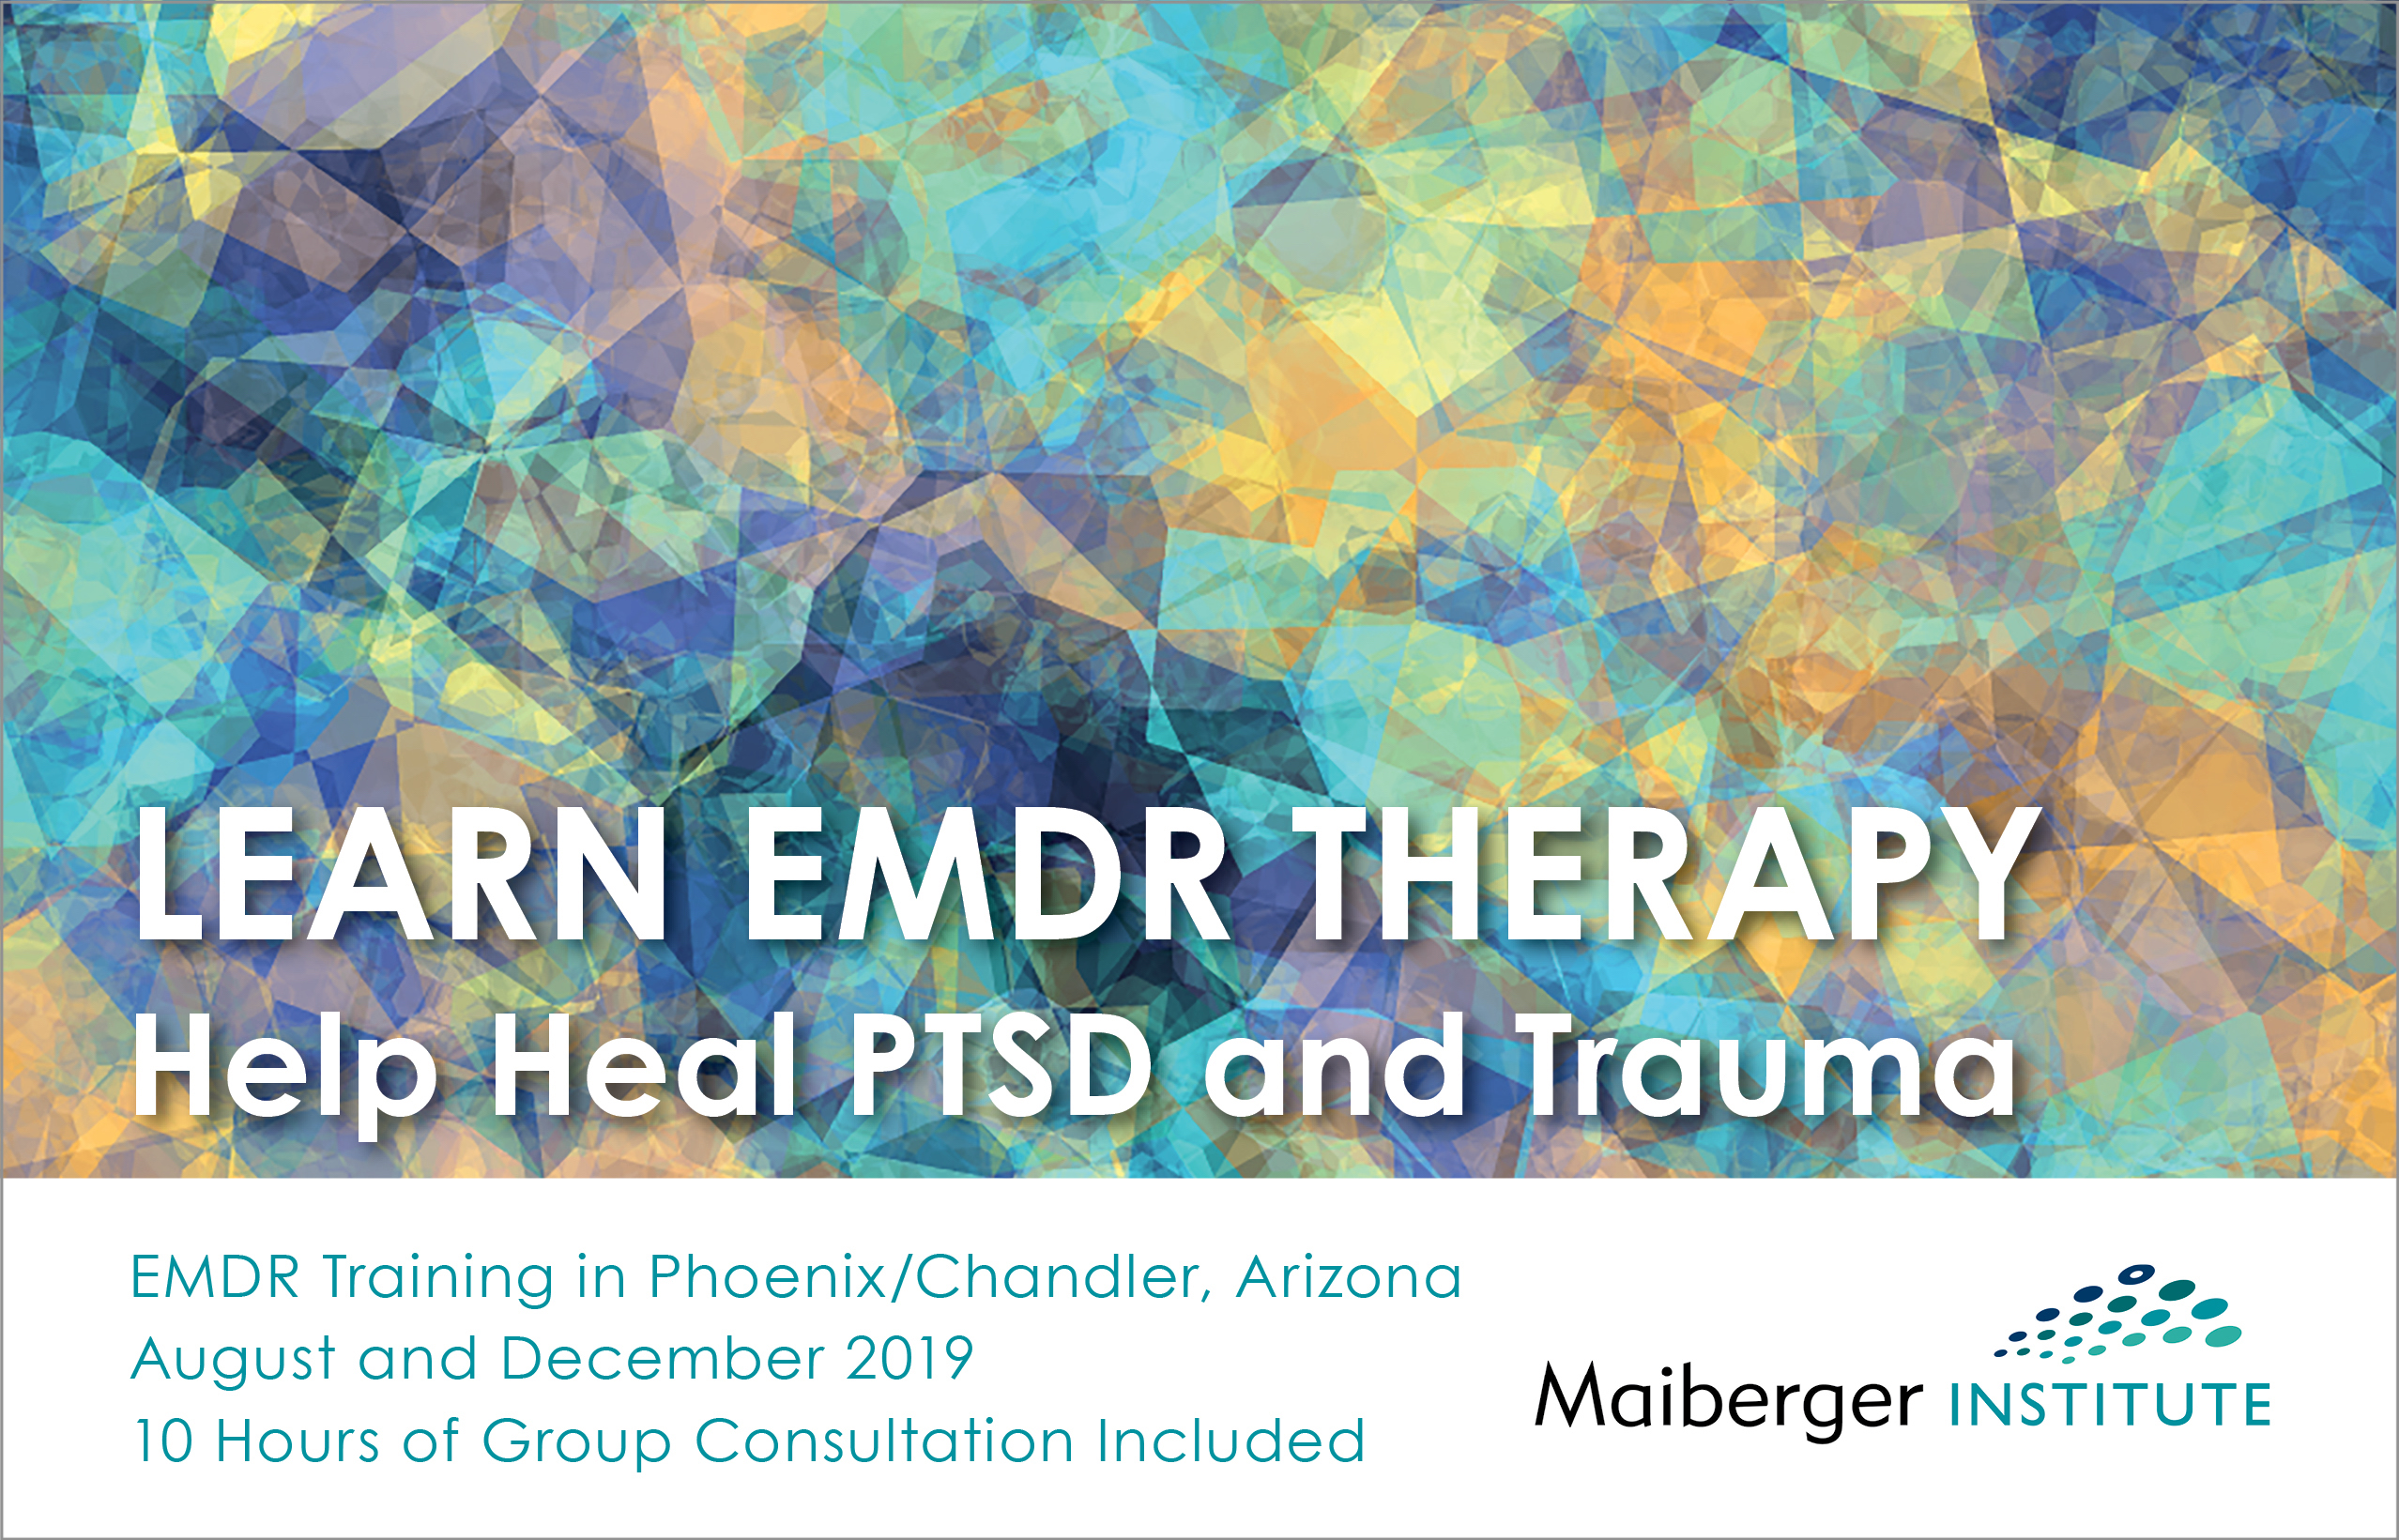 EMDR Training in Phoenix/Chandler, Arizona - August and December 2019 - Maiberger Institute